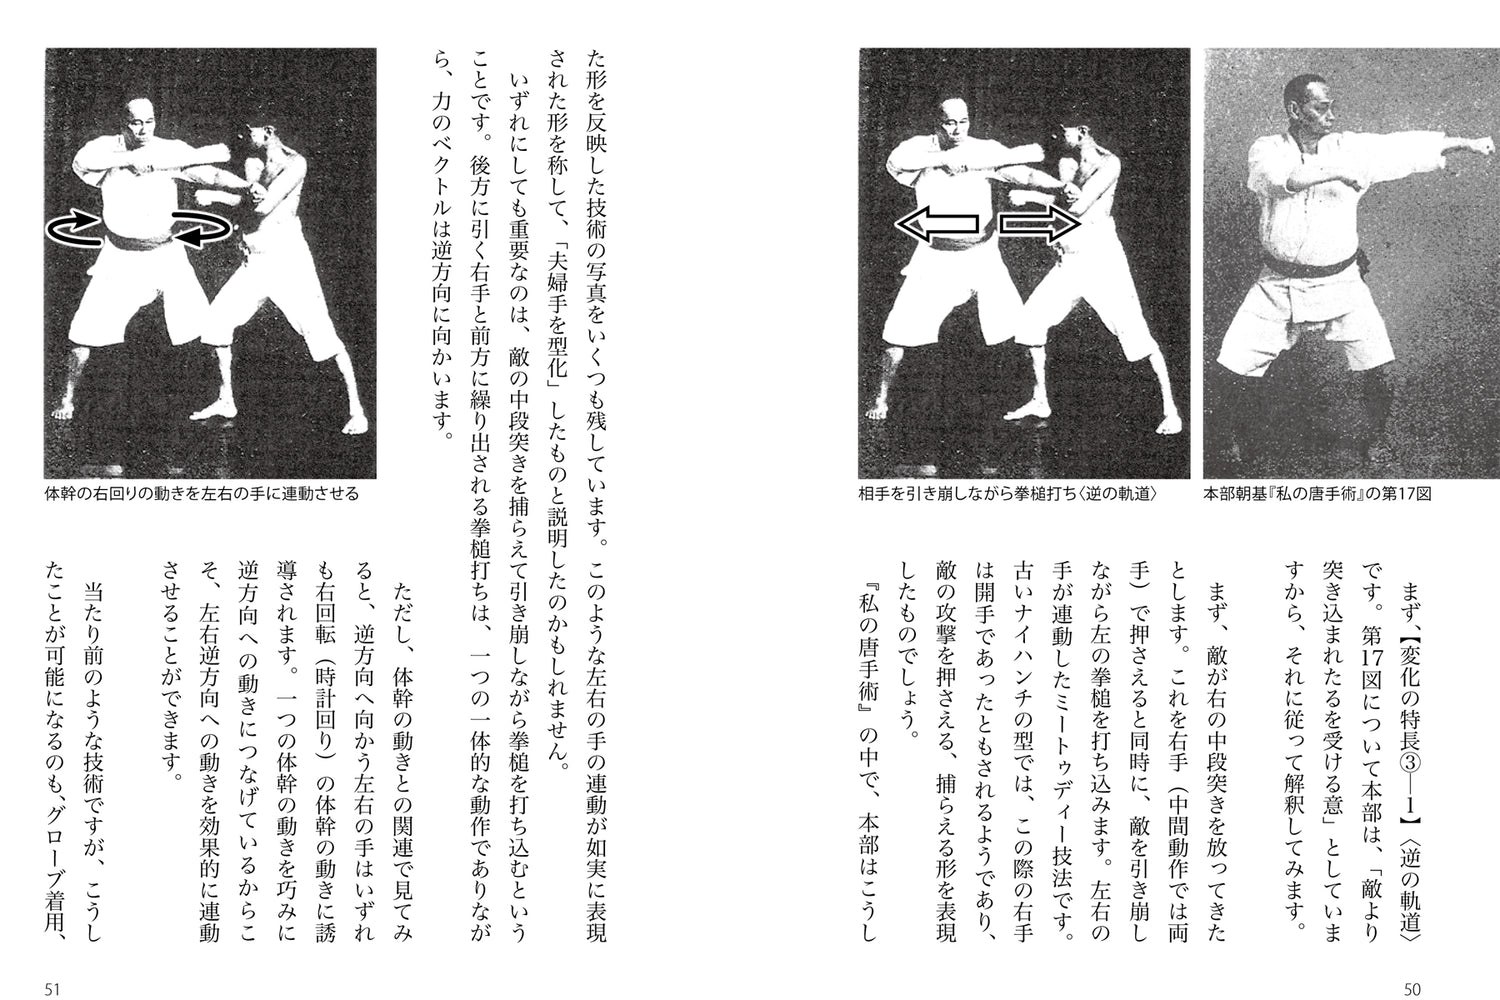 Libro Meotodo del Karate de Tetsuji Sato